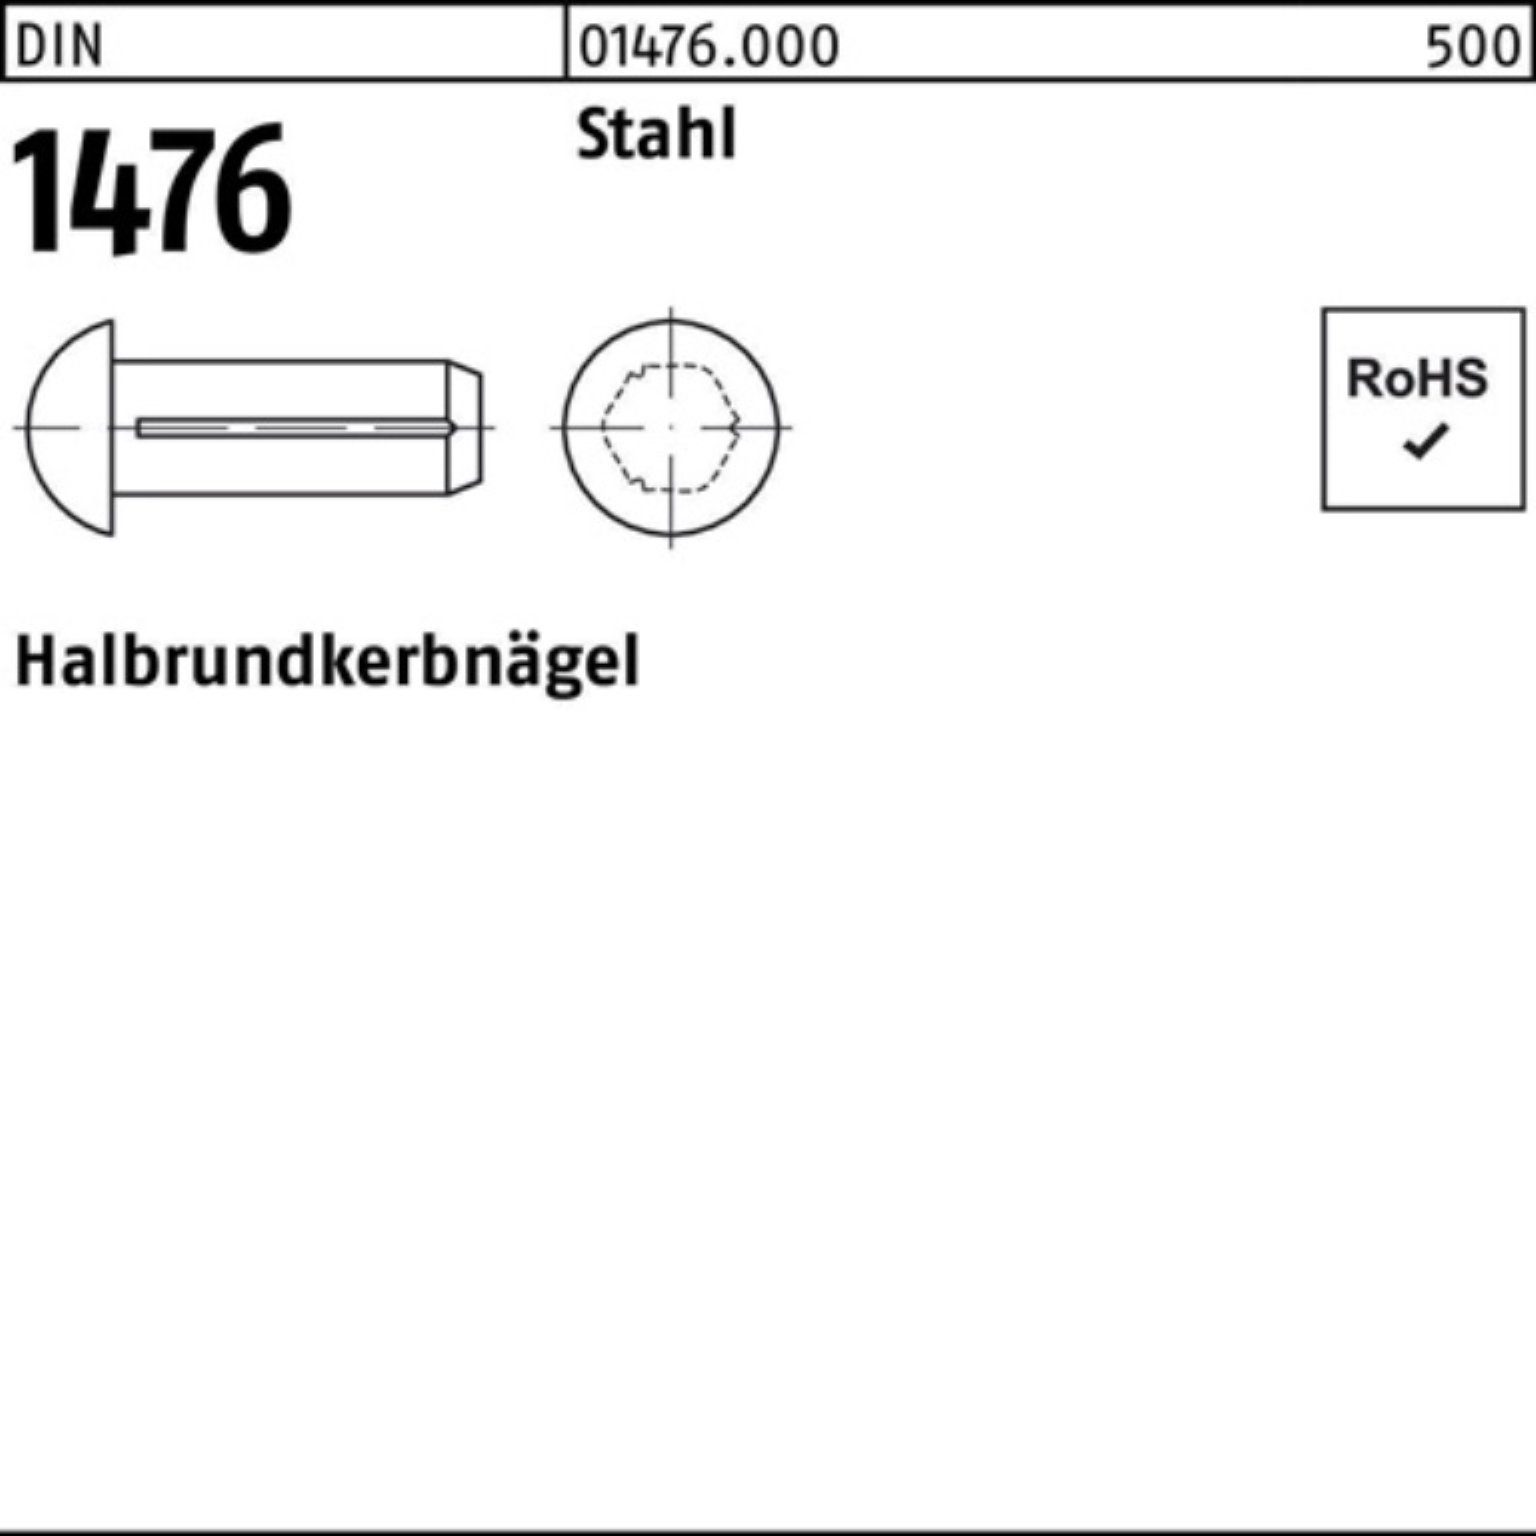 Reyher Nagel DIN Pack 500er Halbrundkerbnagel DIN Stück 8 S 500 1476 1476 Stahl 2x